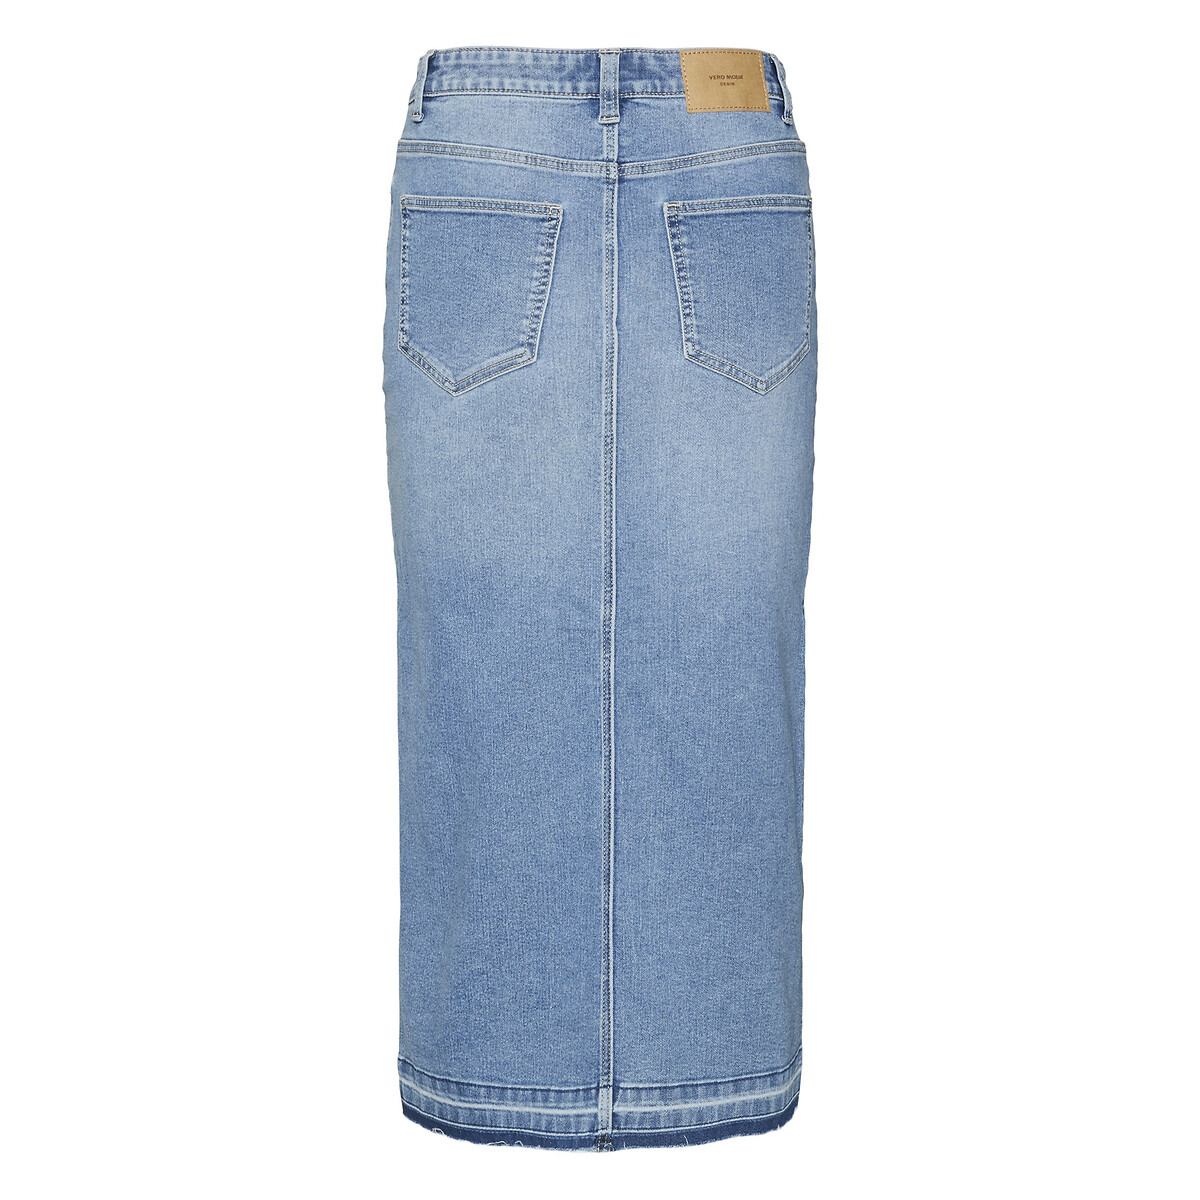 Юбка из джинсовой ткани с высокой посадкой  XS синий LaRedoute, размер XS - фото 2